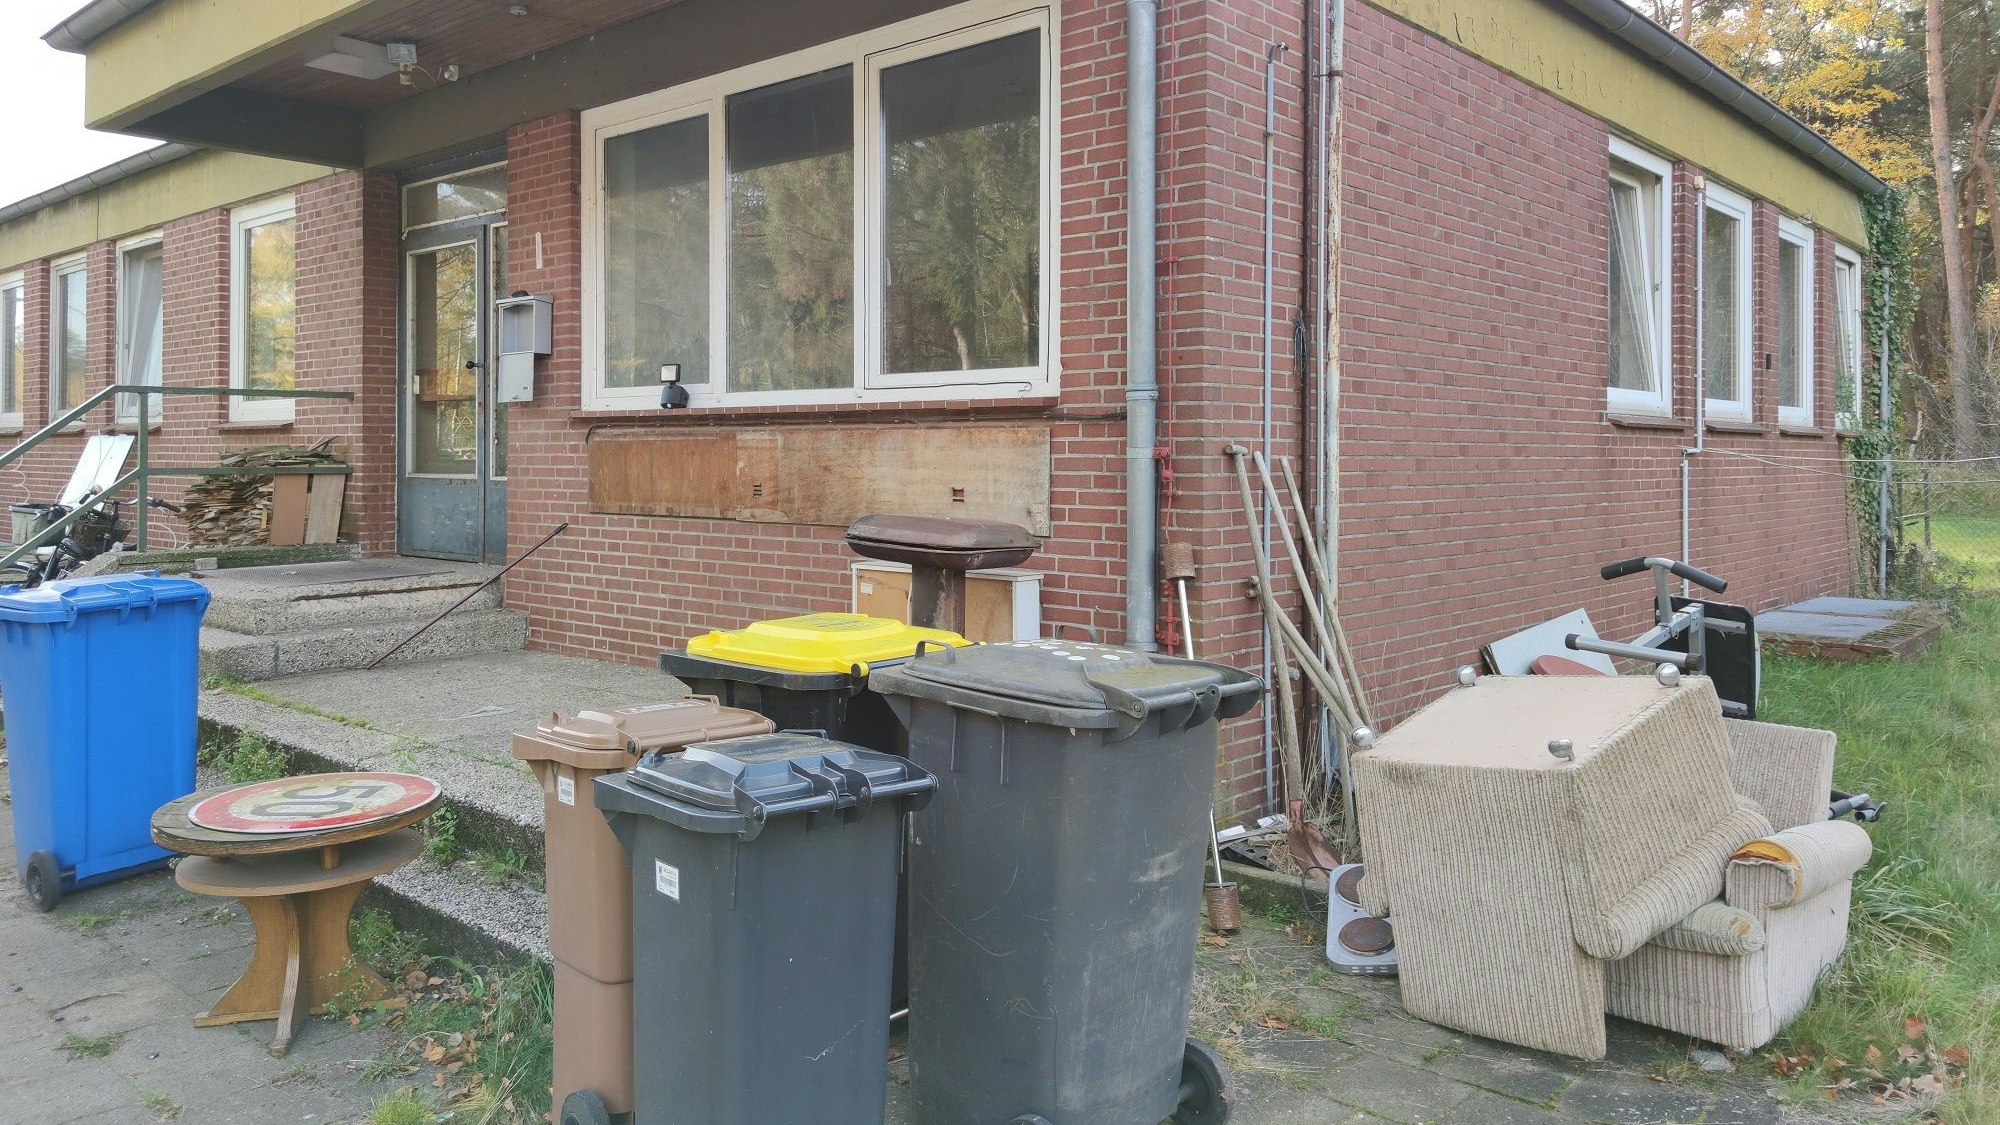 Notunterkunft: Wer kein eigenes Dach über dem Kopf hat, erhält eine Bleibe beim Bauhof der Gemeinde Holdorf in Fladderlohausen, um nicht in die Obdachlosigkeit zu geraten. Foto: Röttgers